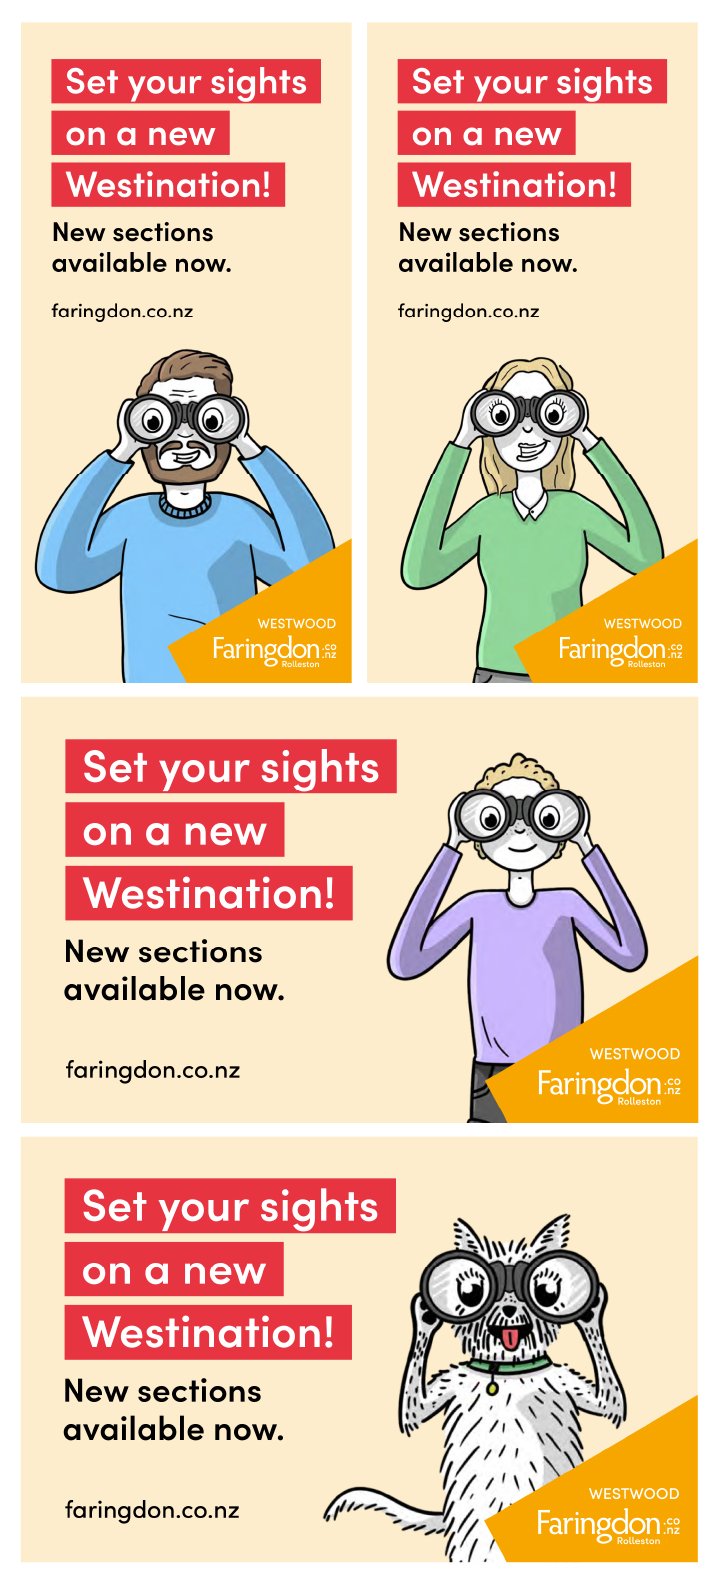   Faringdon   Campaign illustrations 